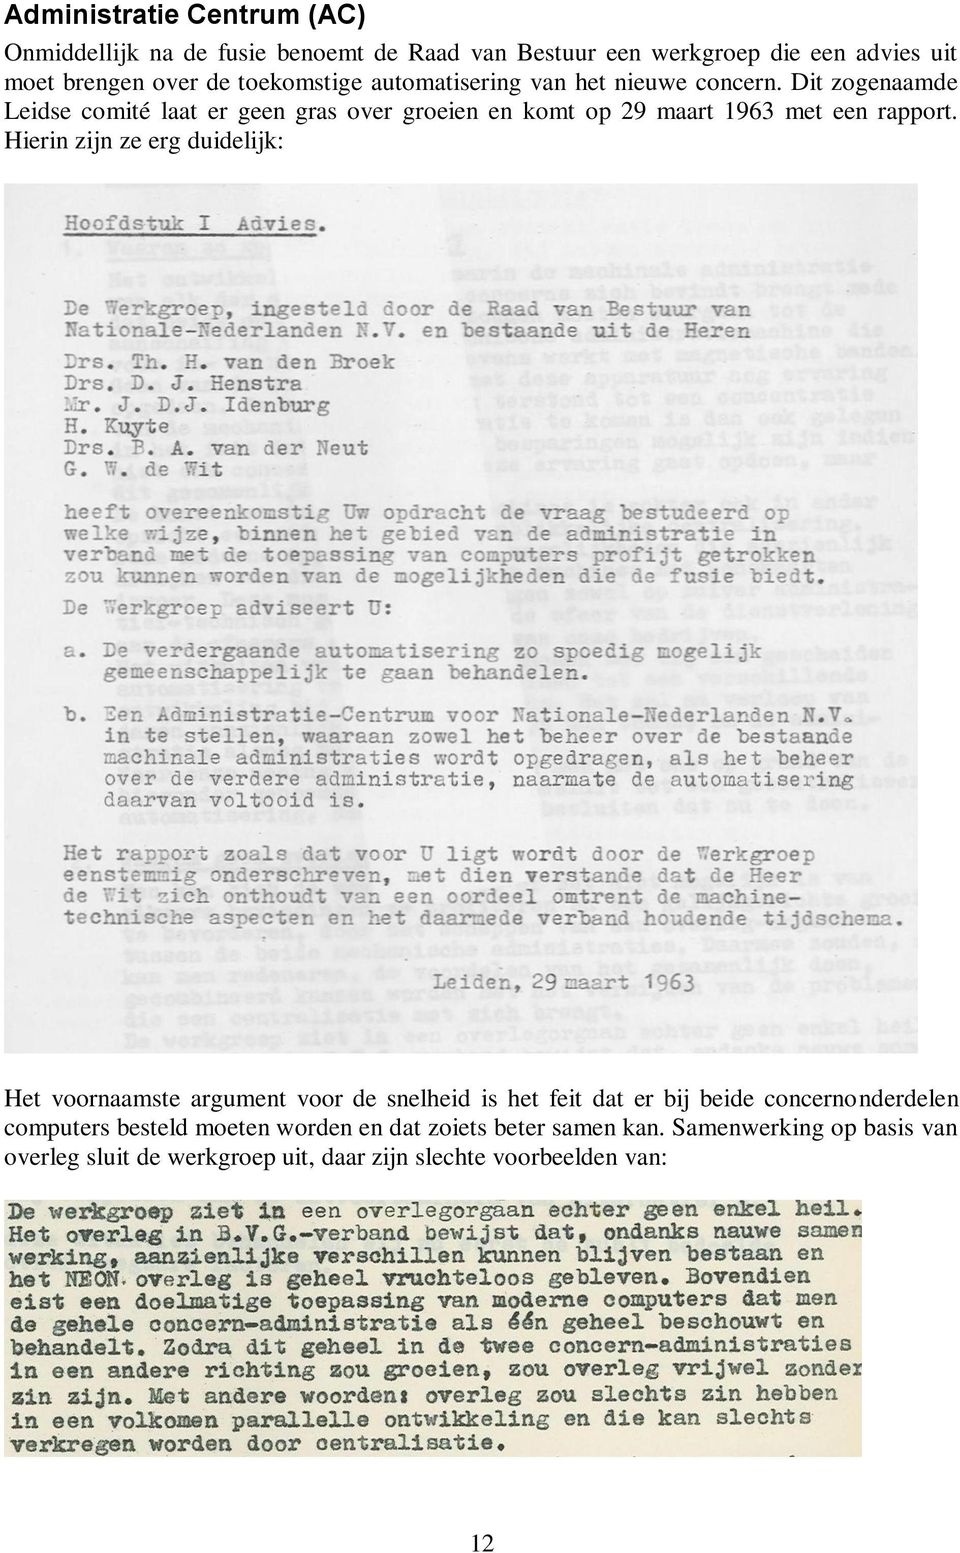 Dit zogenaamde Leidse comité laat er geen gras over groeien en komt op 29 maart 1963 met een rapport.